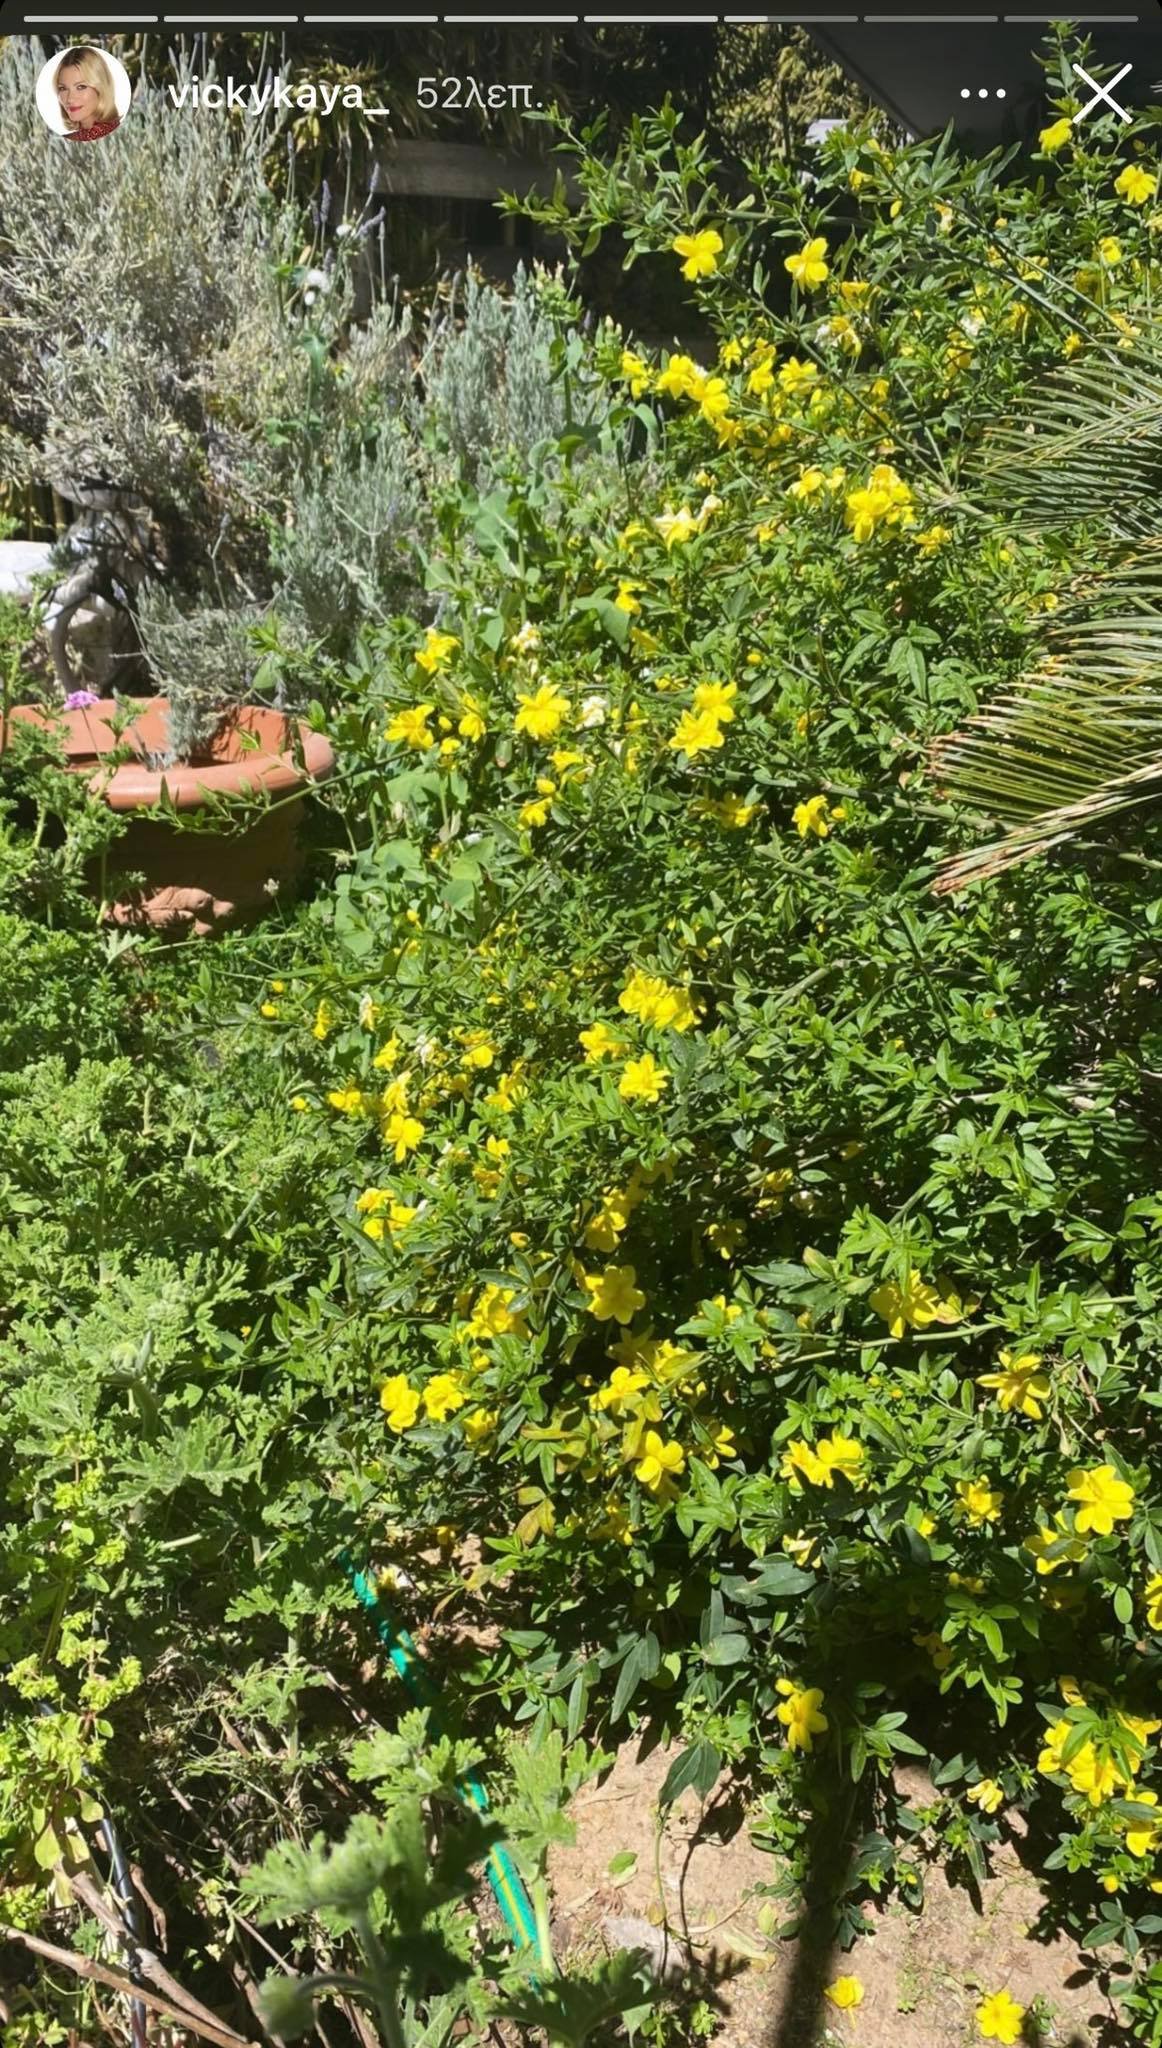 Βίκυ Καγιά: Μας ξεναγεί στον καταπράσινο κήπο του σπιτιού της με τα υπέροχα φυτά